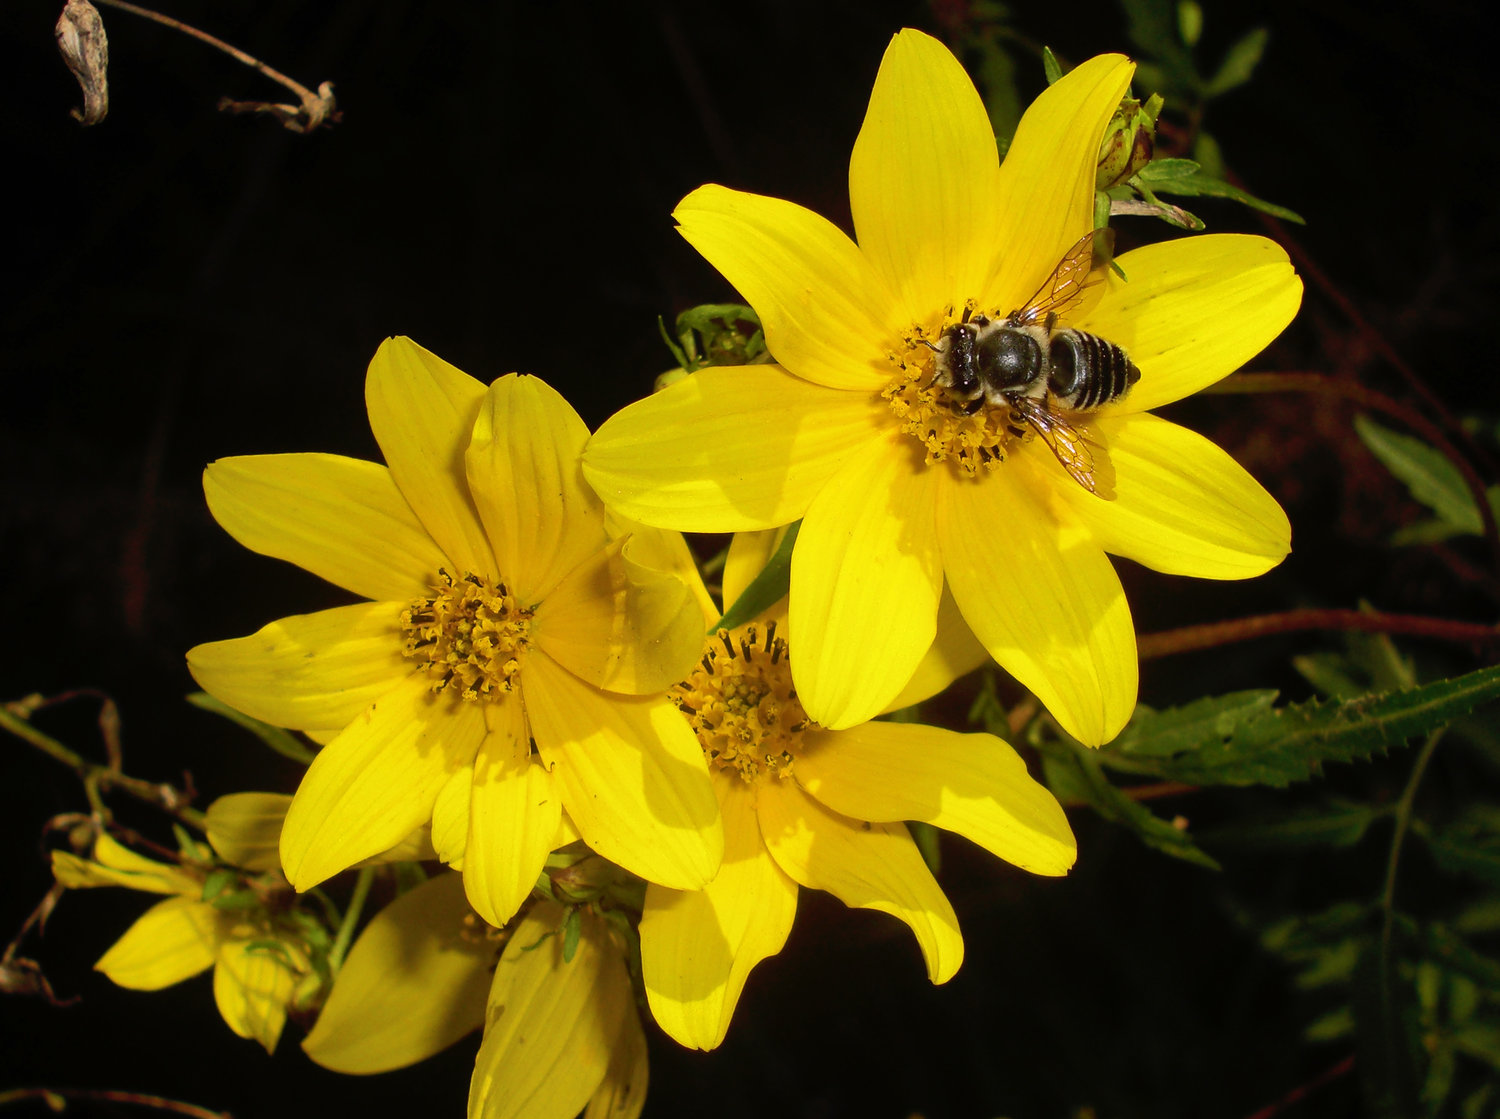 Honeybees are great pollinators.